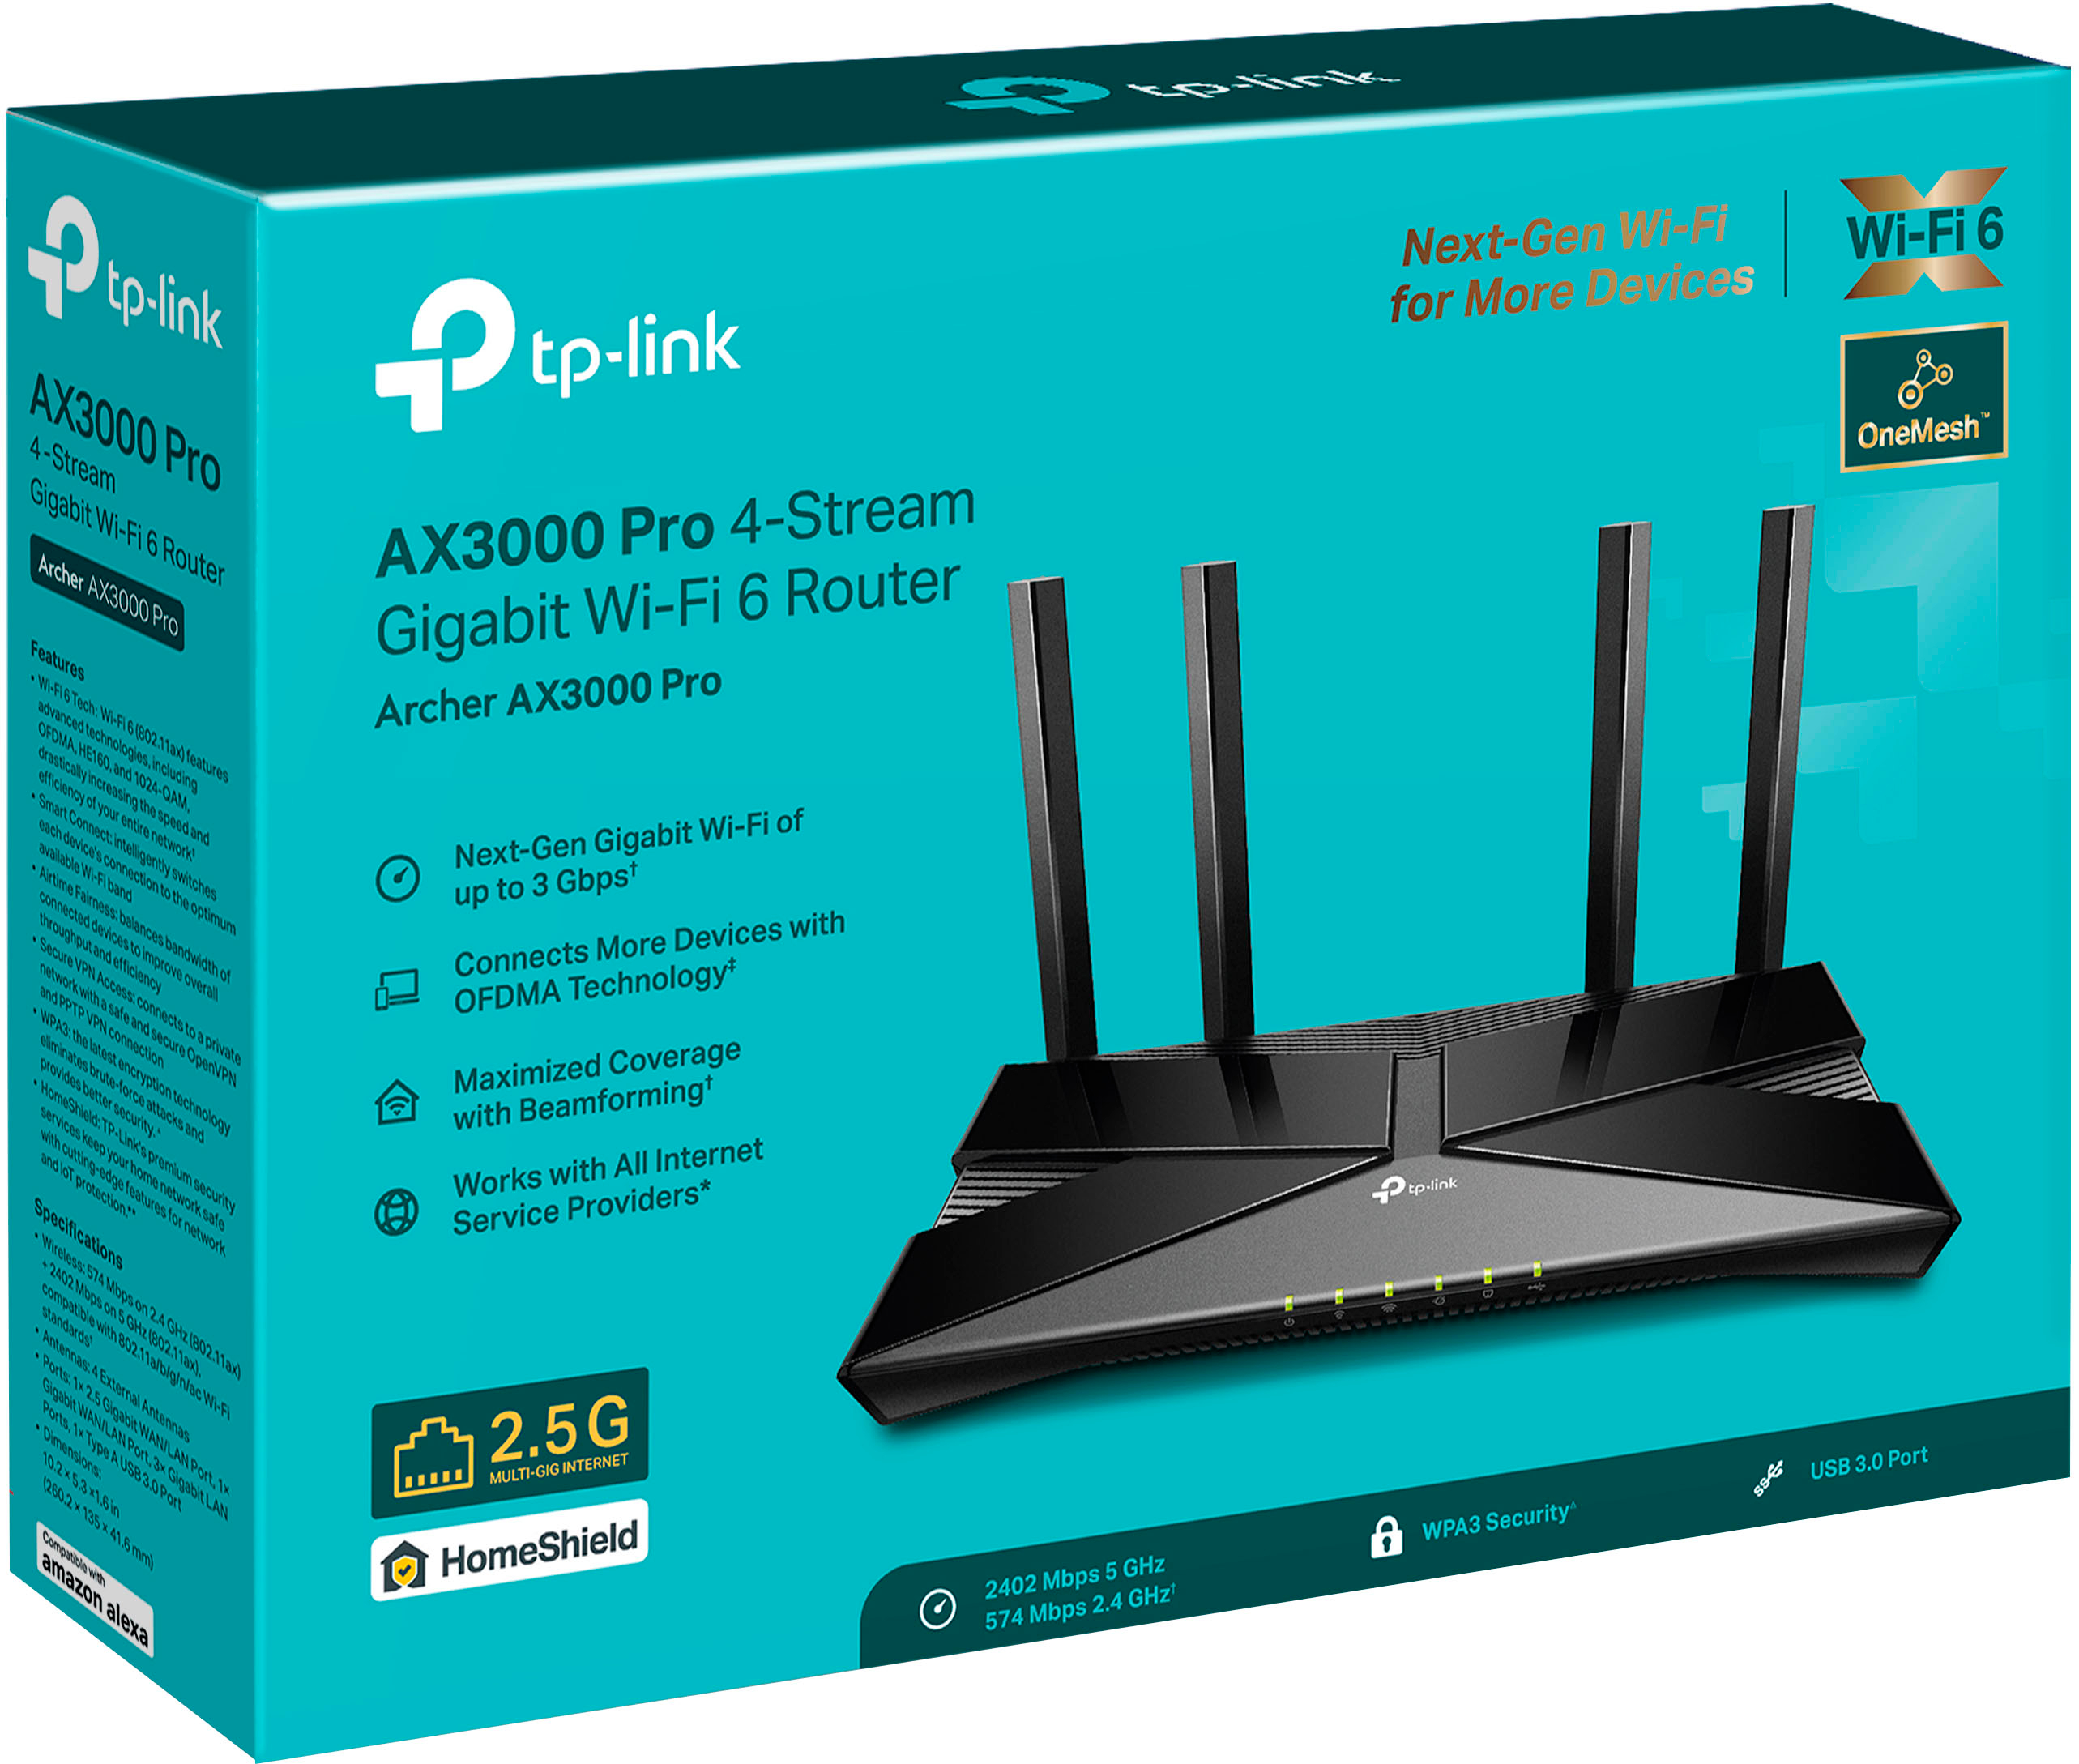 TP-Link Routeur WiFi 6, Routeur WiFi AX 3000 Mbp…